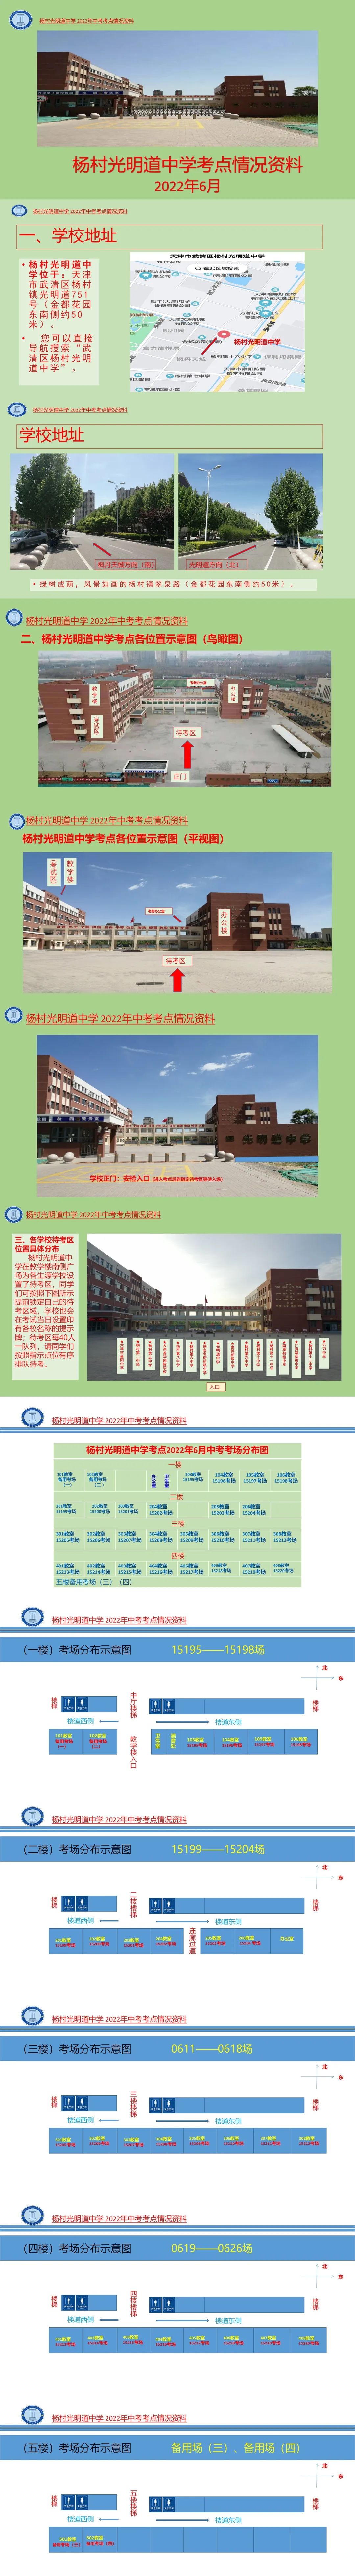 2022年天津武清区中考考点考场示意图(图36)